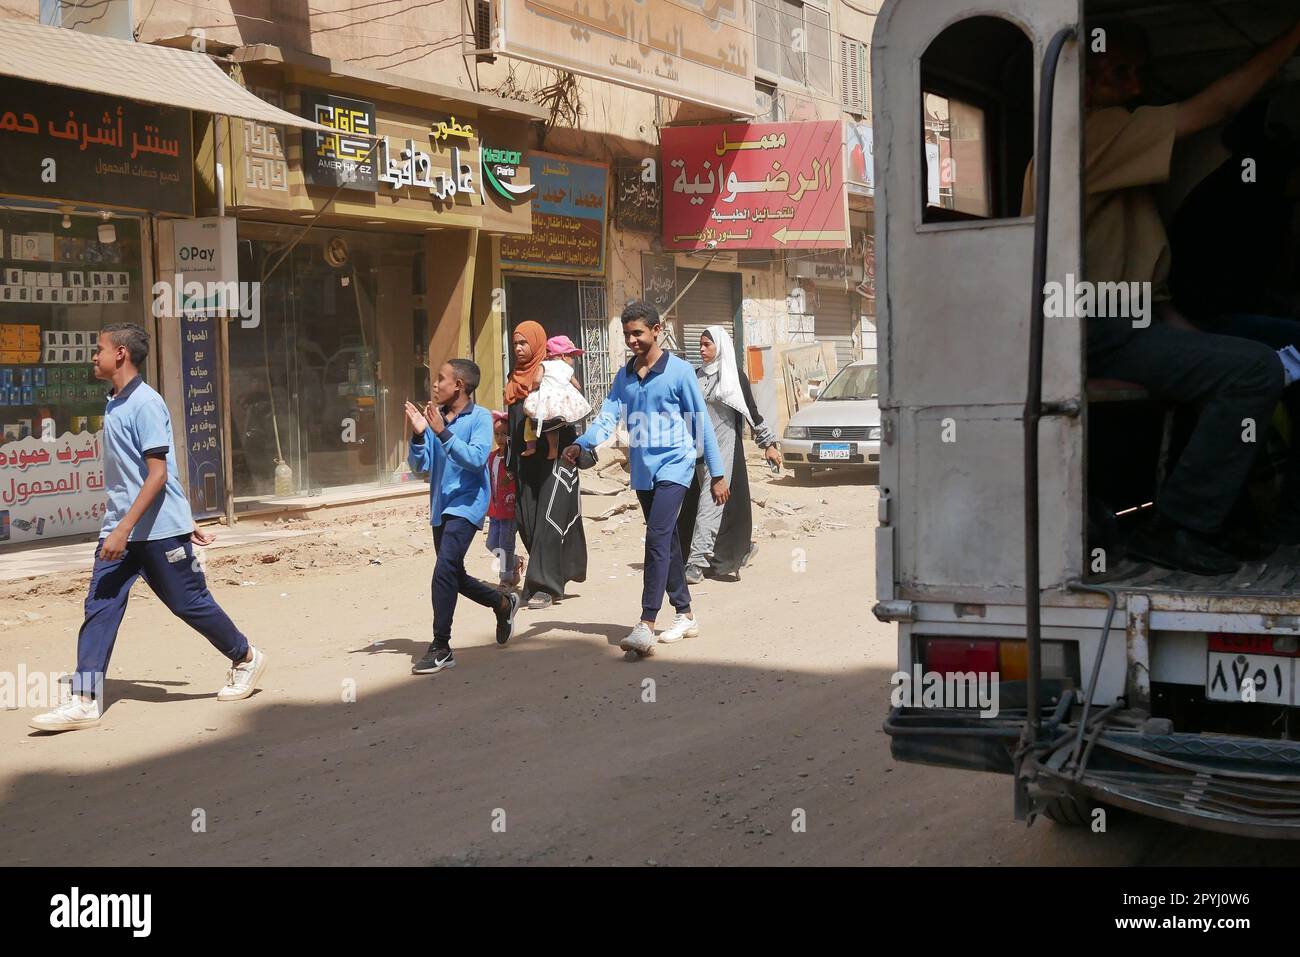 Persone che camminano accanto a un minivan pubblico sulle strade polverose di al-Balyana in Egitto Foto Stock